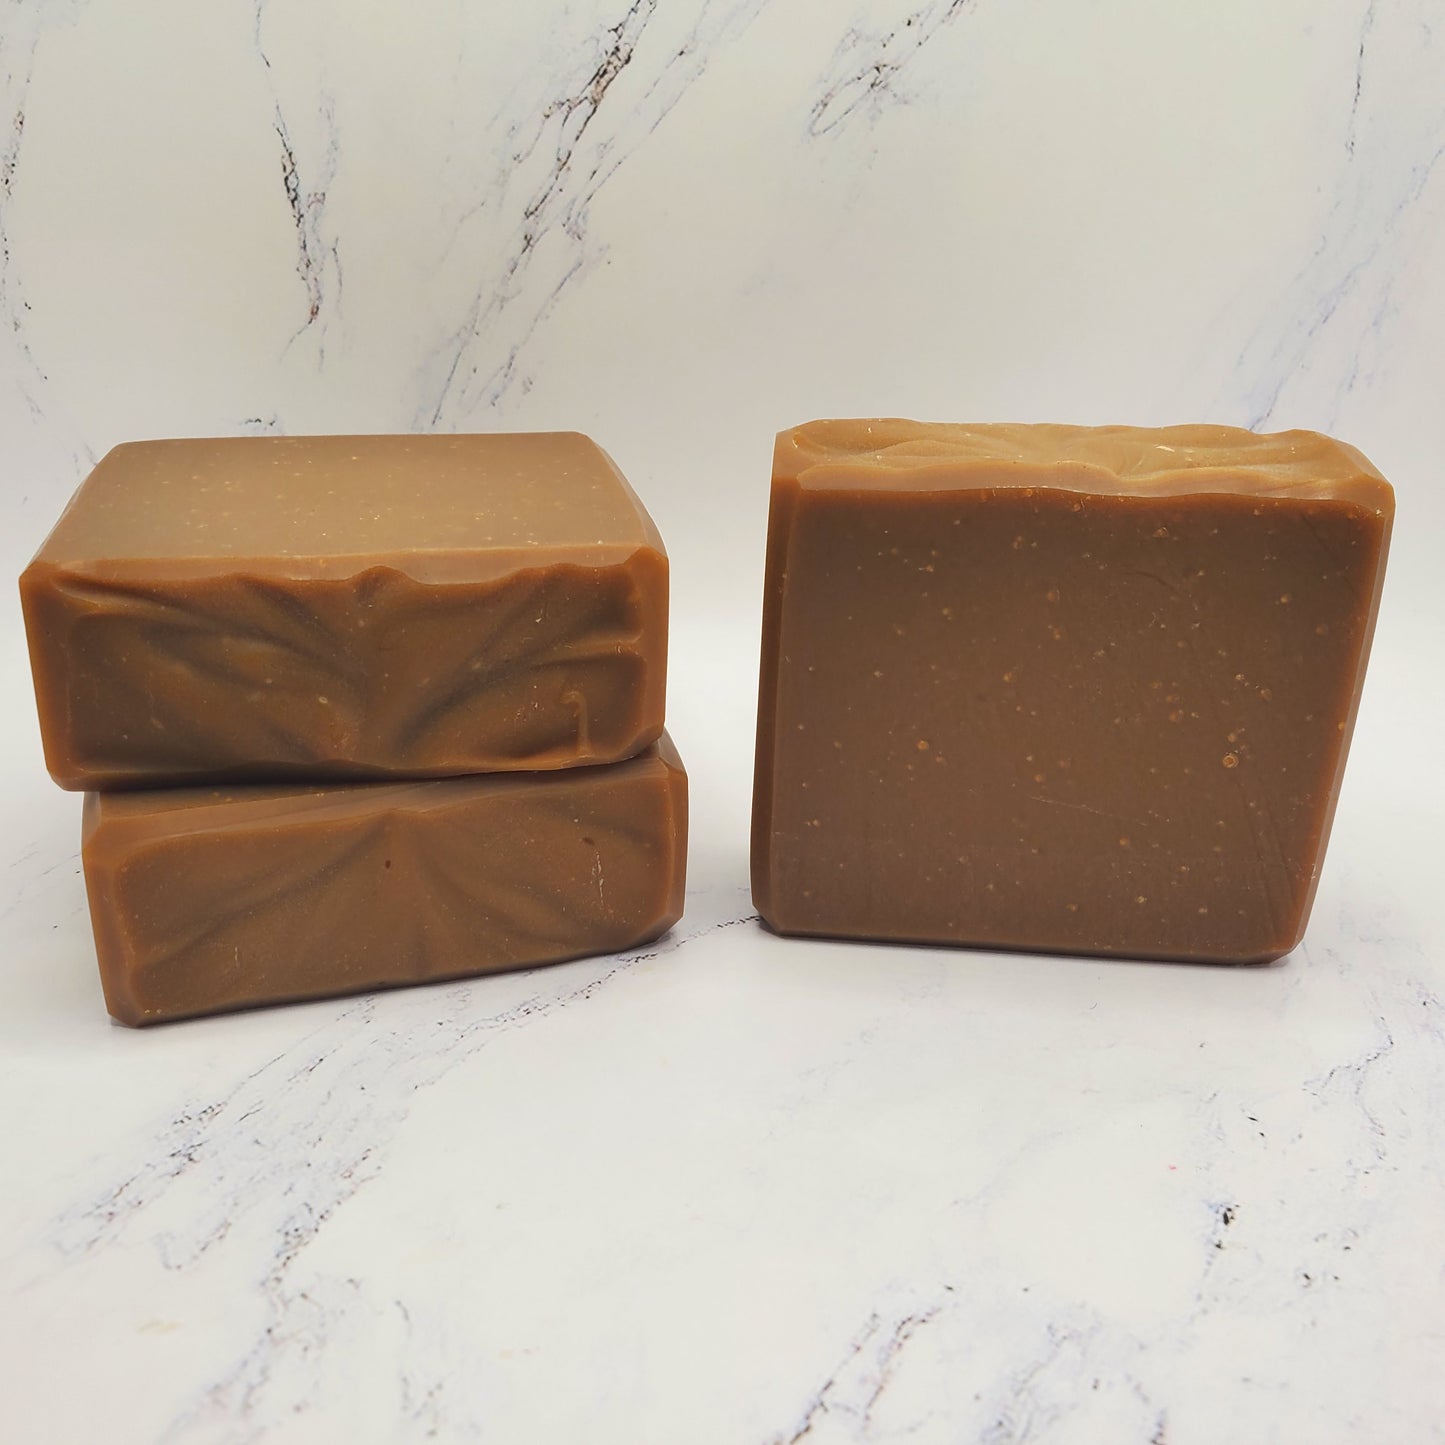 Pine Tar Bar Soap Unscented for Sensitive Skin